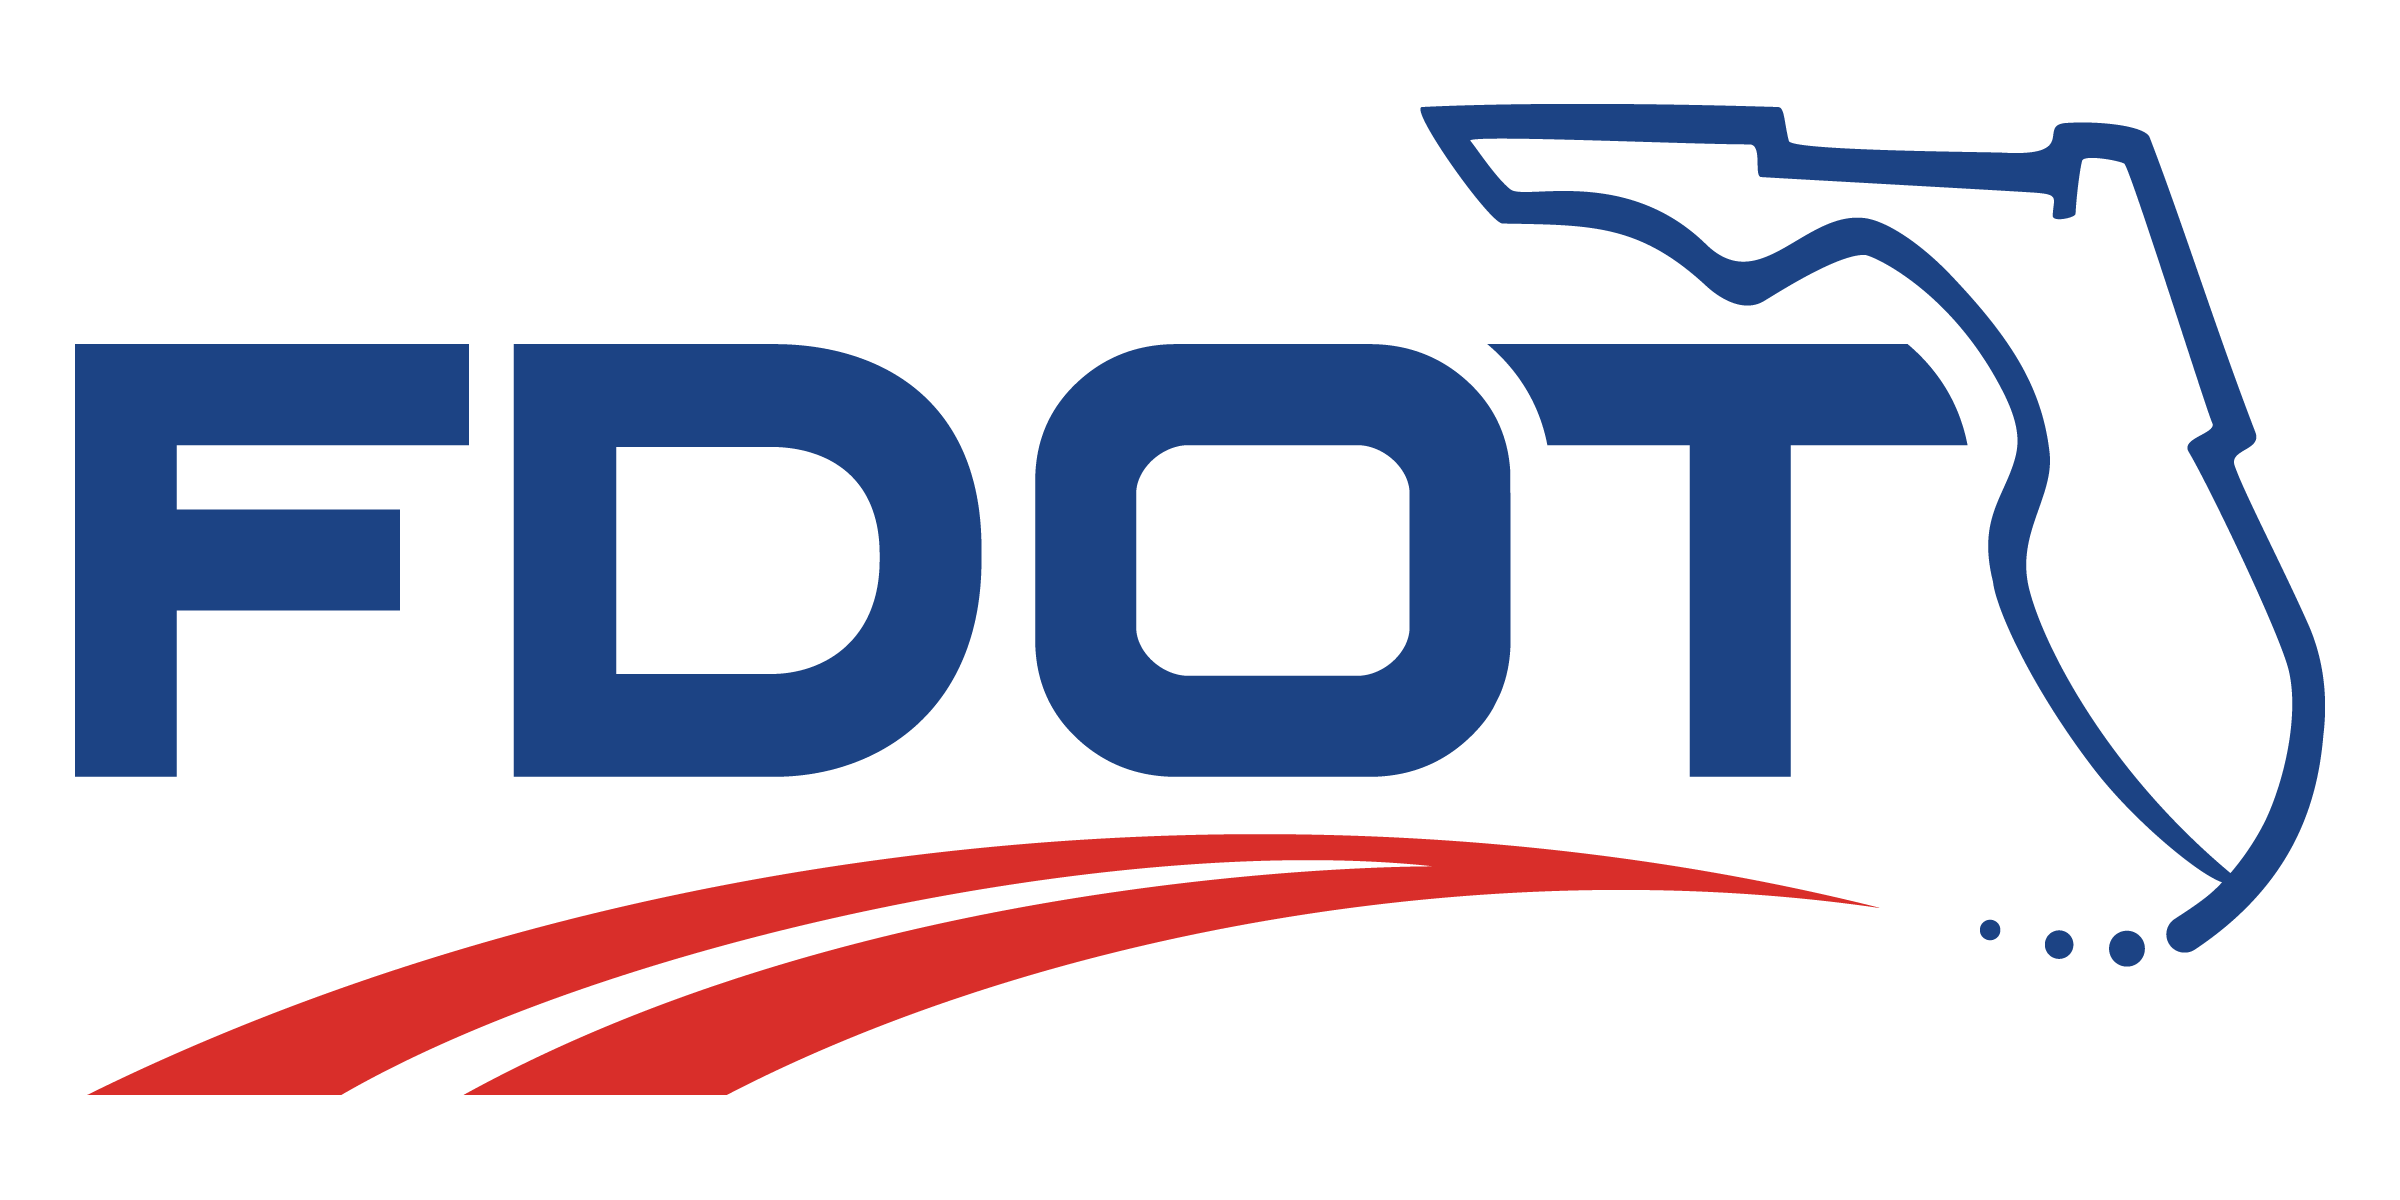 FDOT_Logo_color.png